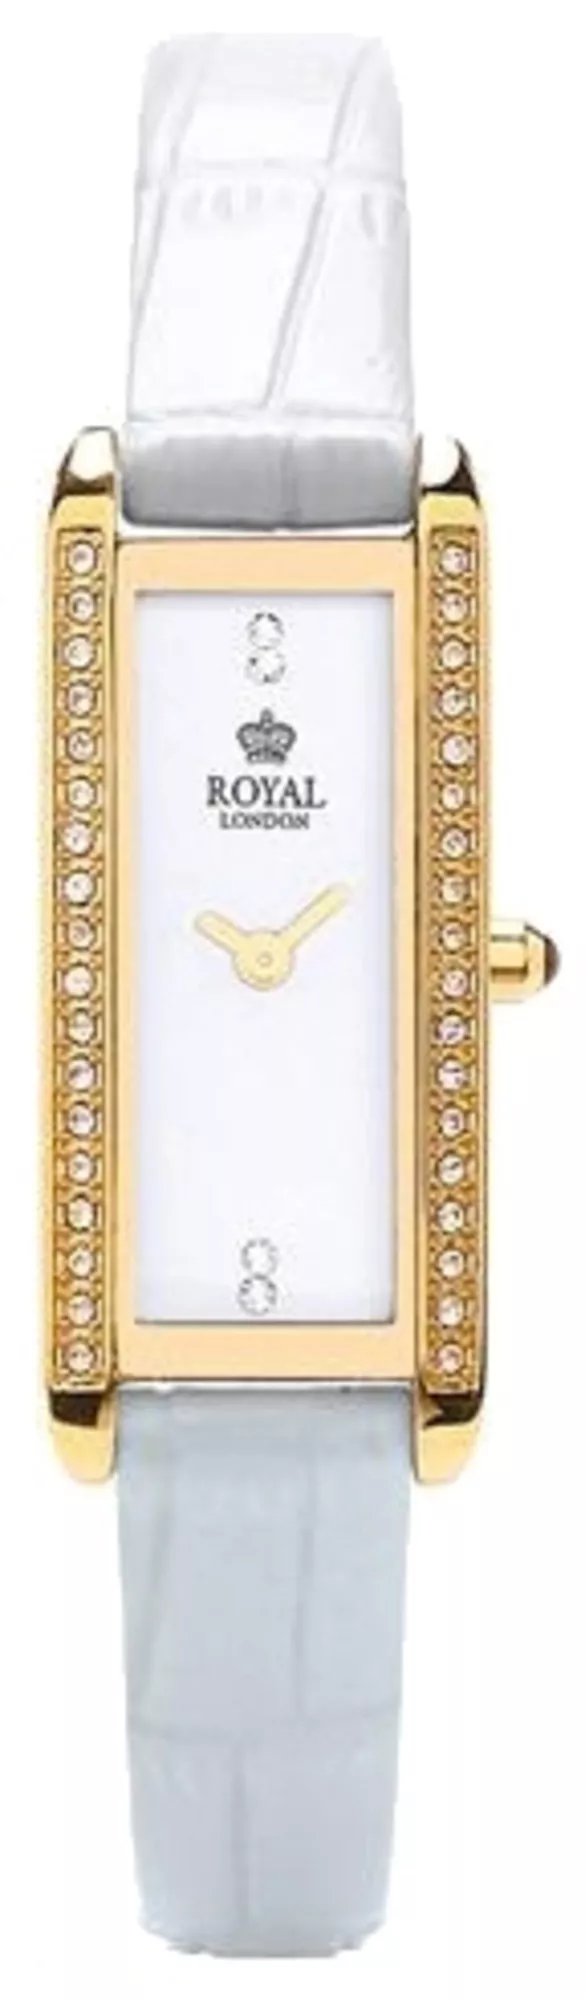 Часы Royal London 21246-06